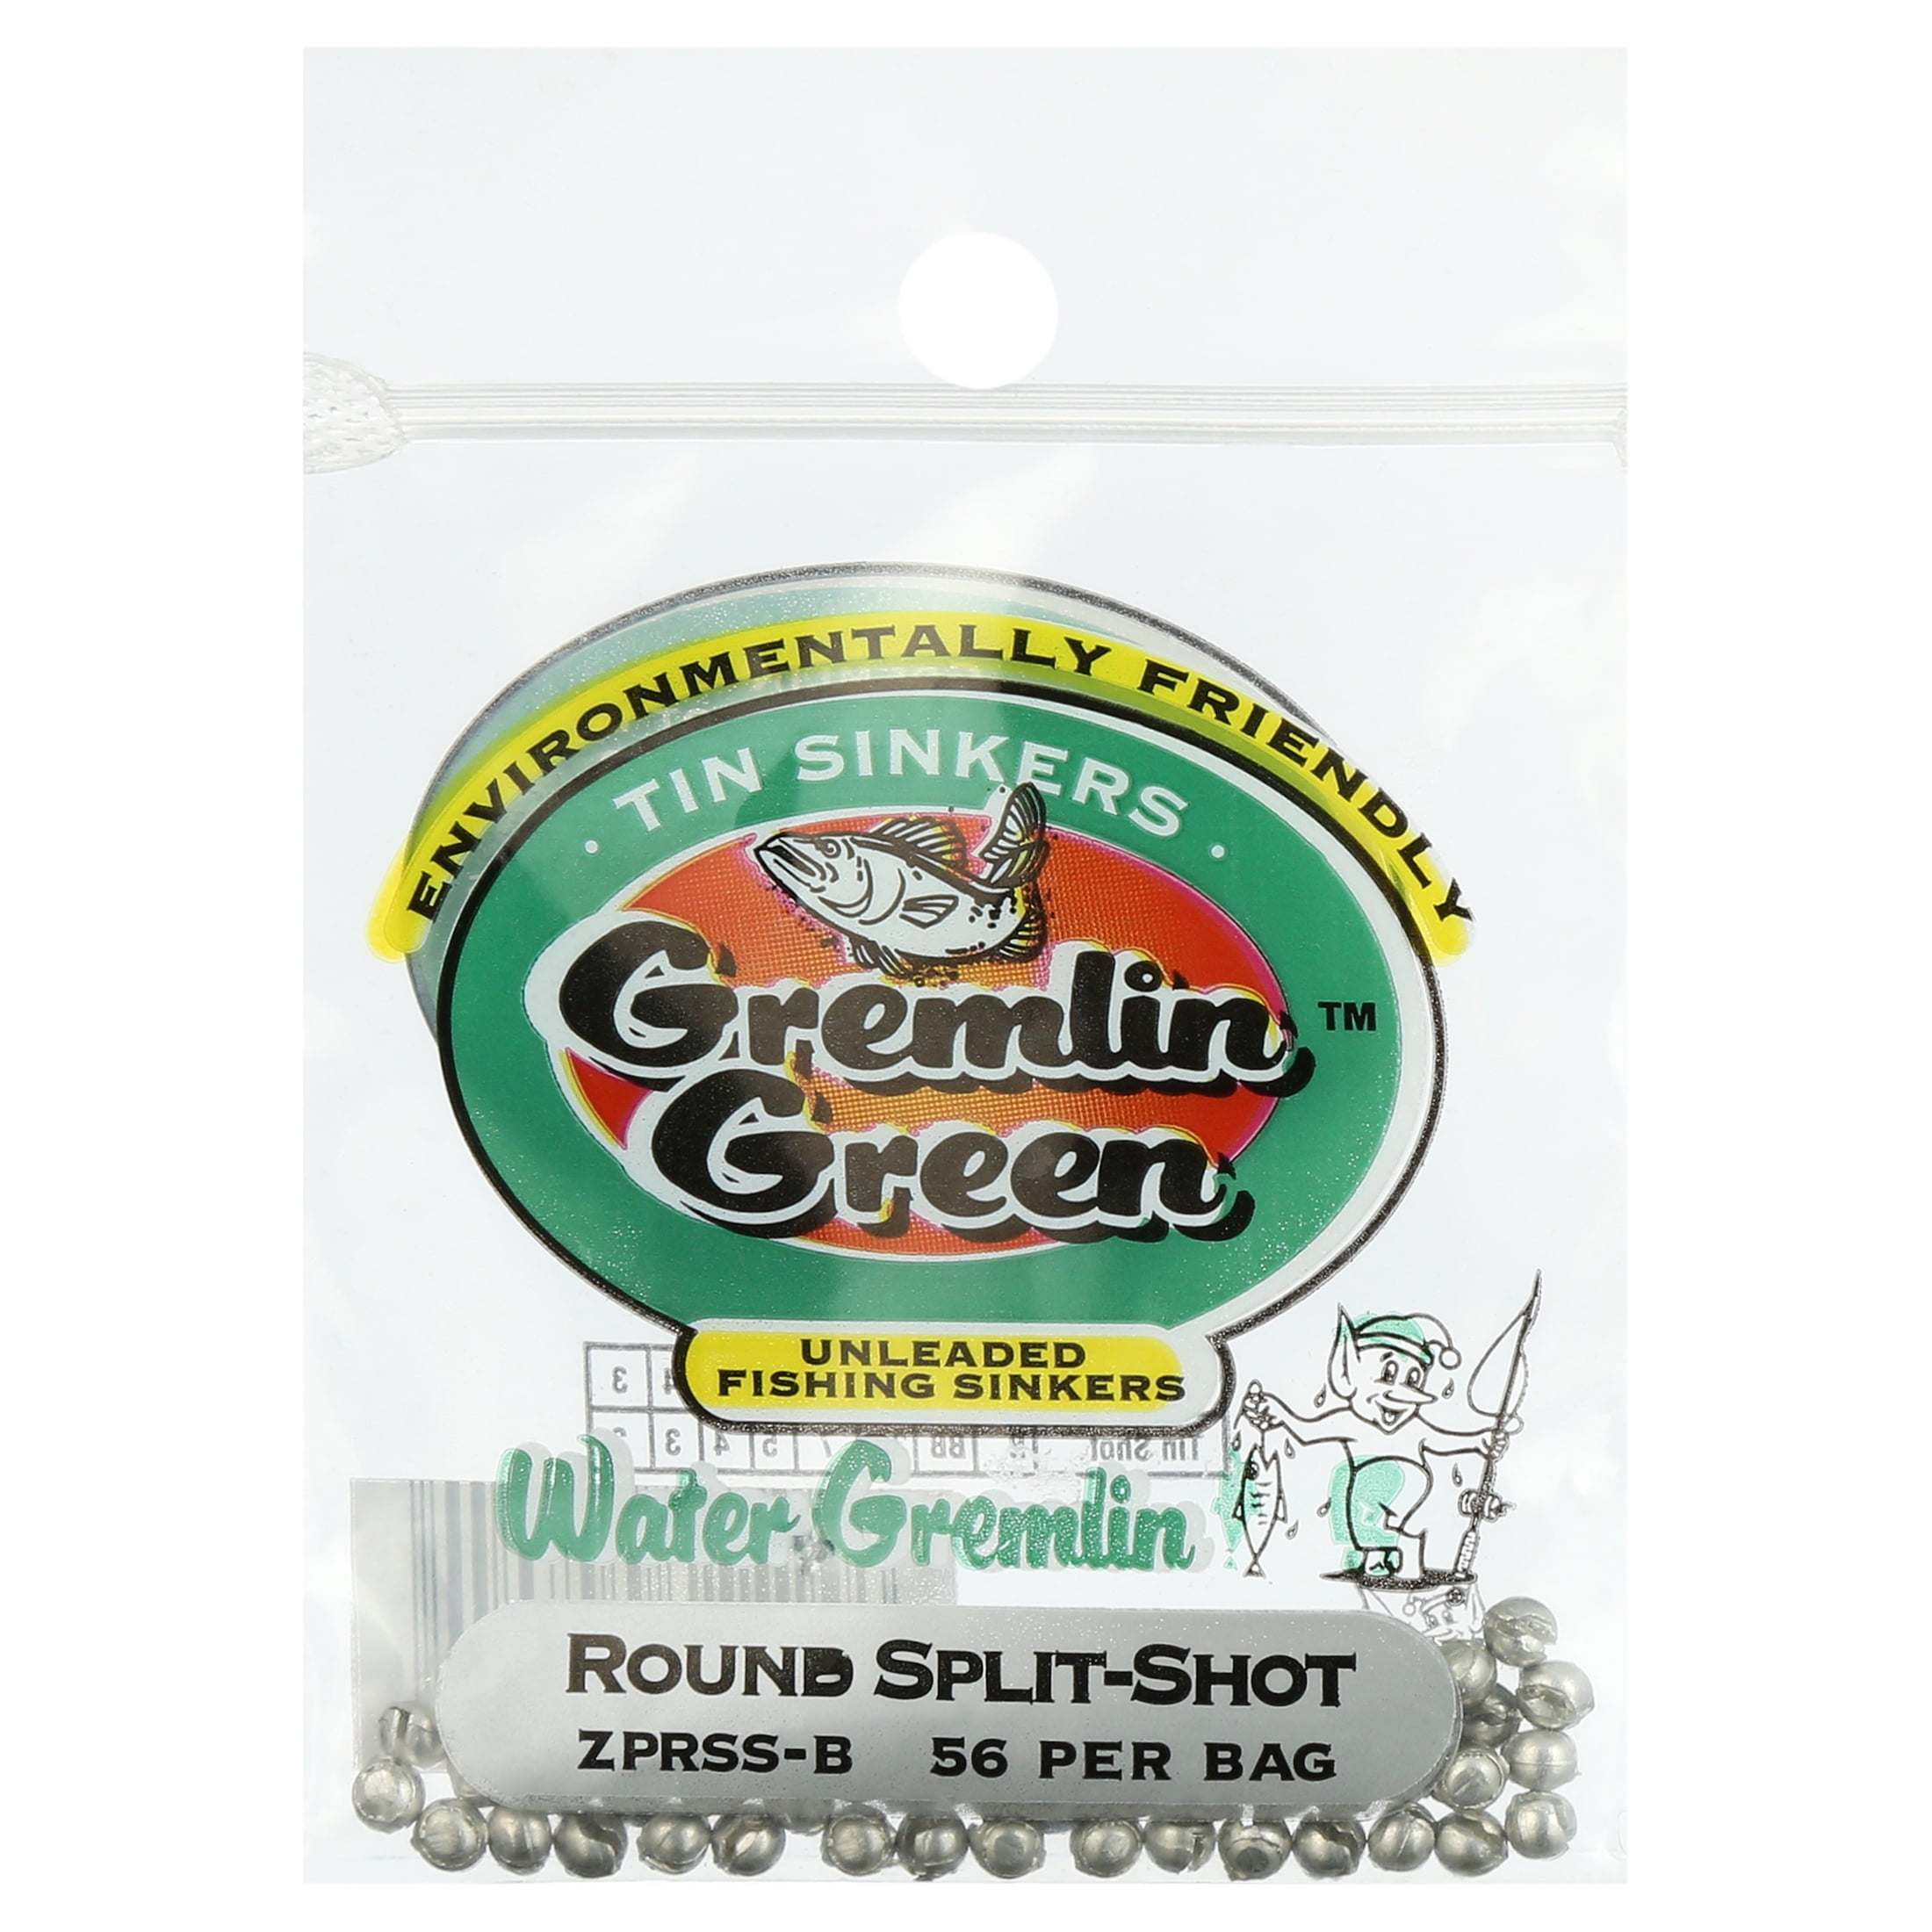 Water Gremlin Green/Tin Round Split Shot Sinker, ZPRSS-B, Size B, 56 Pieces  